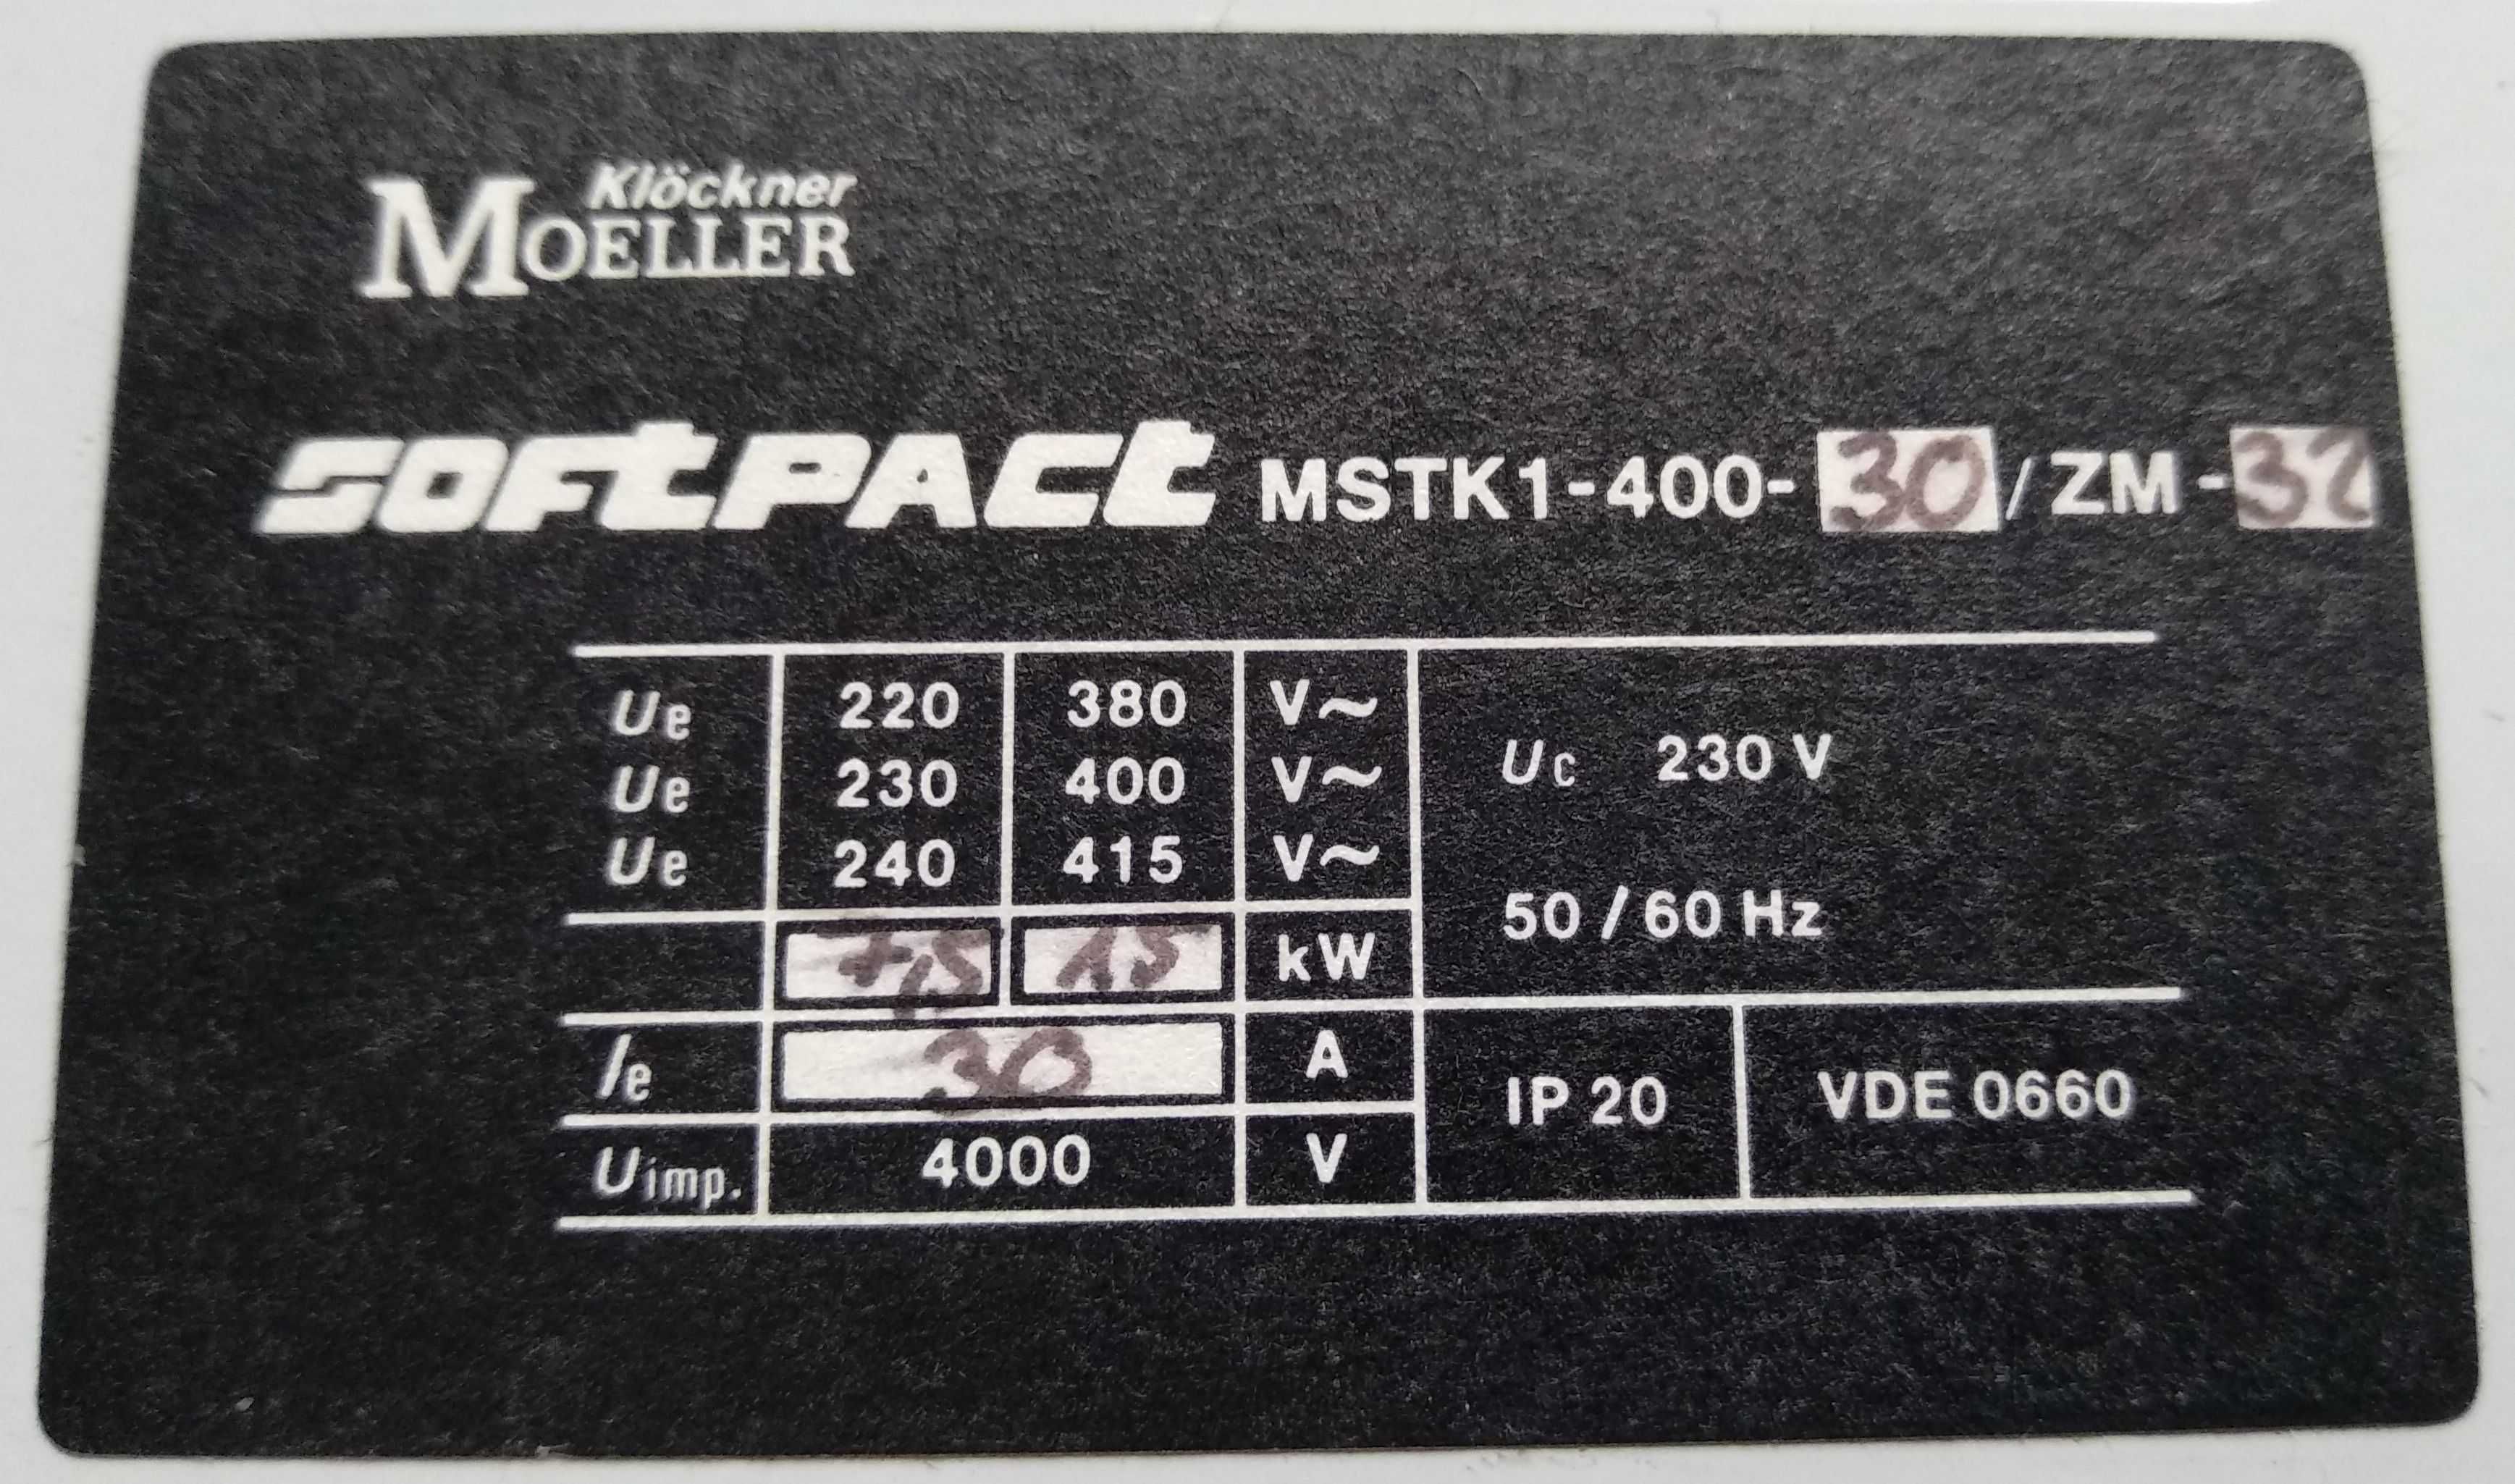 Klöckner Moeller MSTK1-400-32 / ZM-32 Softpact softstarter